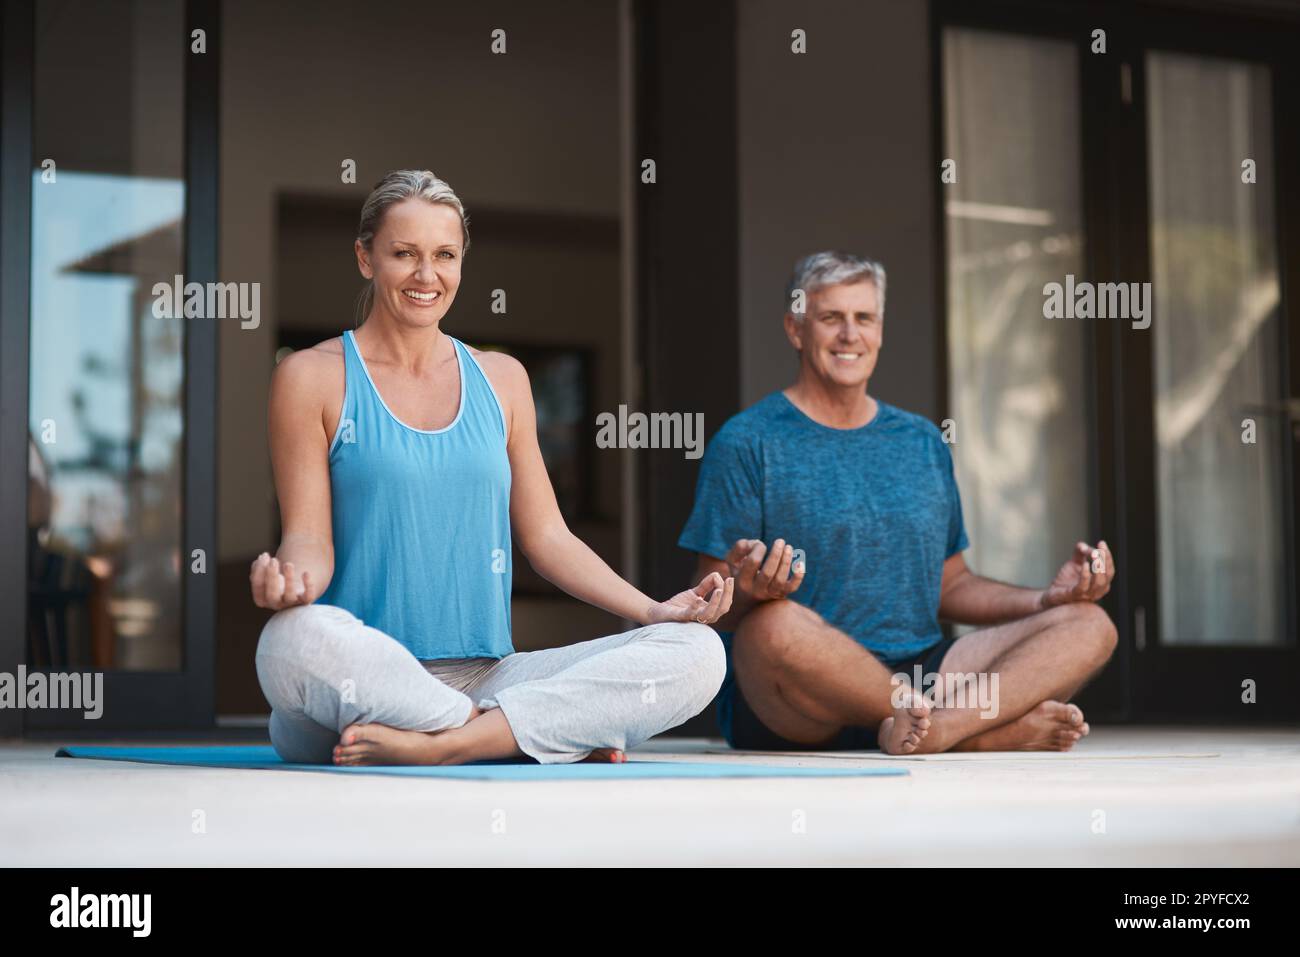 Yoga bringt ein Lächeln ins Gesicht und in den Geist. Reifes und glückliches Paar, das sich in einer Yoga-Pose mit überkreuzten Beinen aufführt. Stockfoto